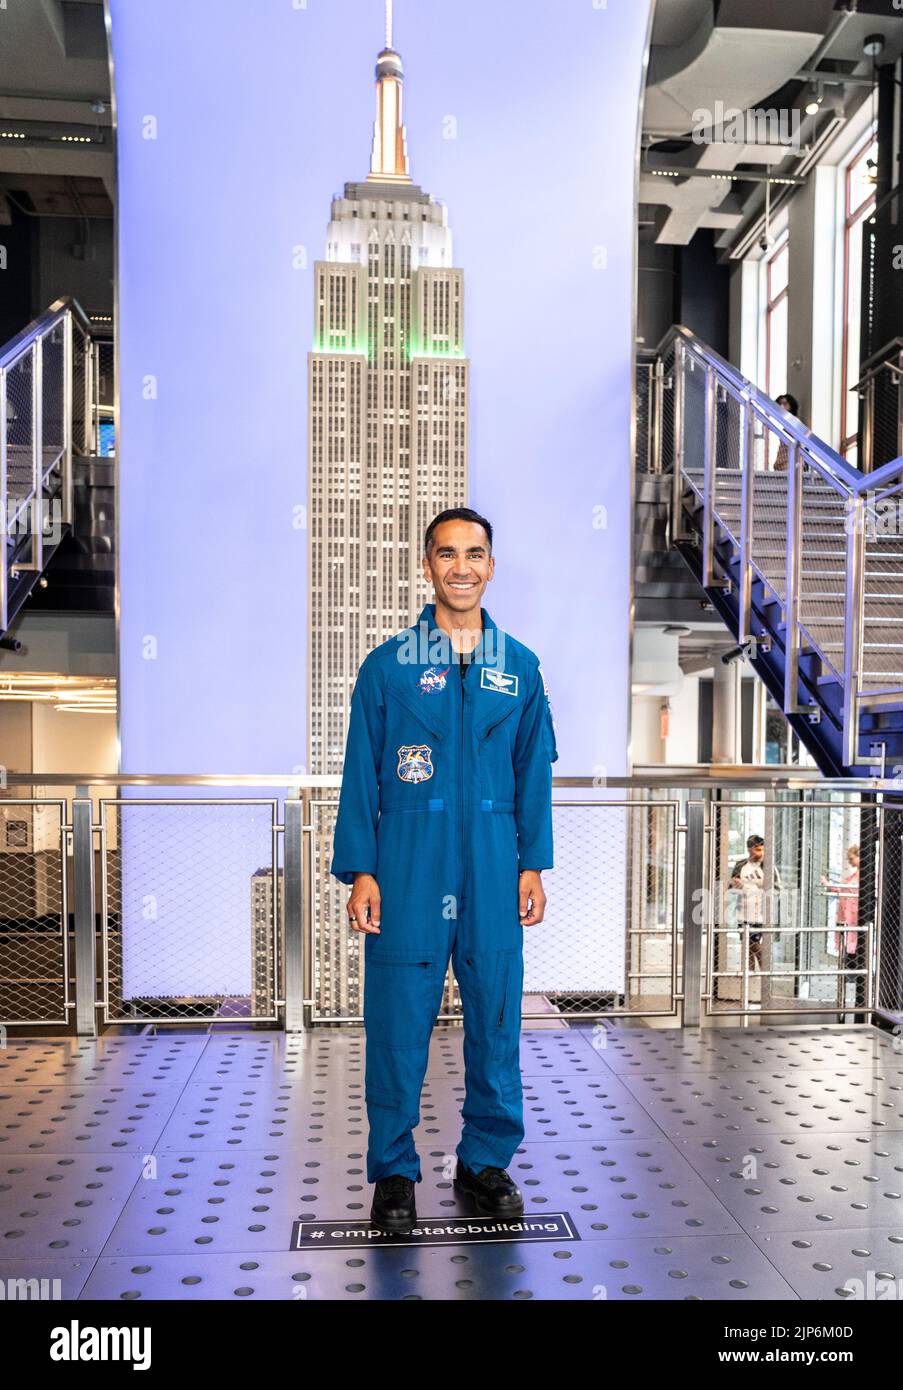 Nueva York, NY - 15 de agosto de 2022: El astronauta Raja Chari se unió a Shankar Mahadevan, cantante y compositor visita el Empire State Building para celebrar el 75th aniversario de la independencia de la India Foto de stock